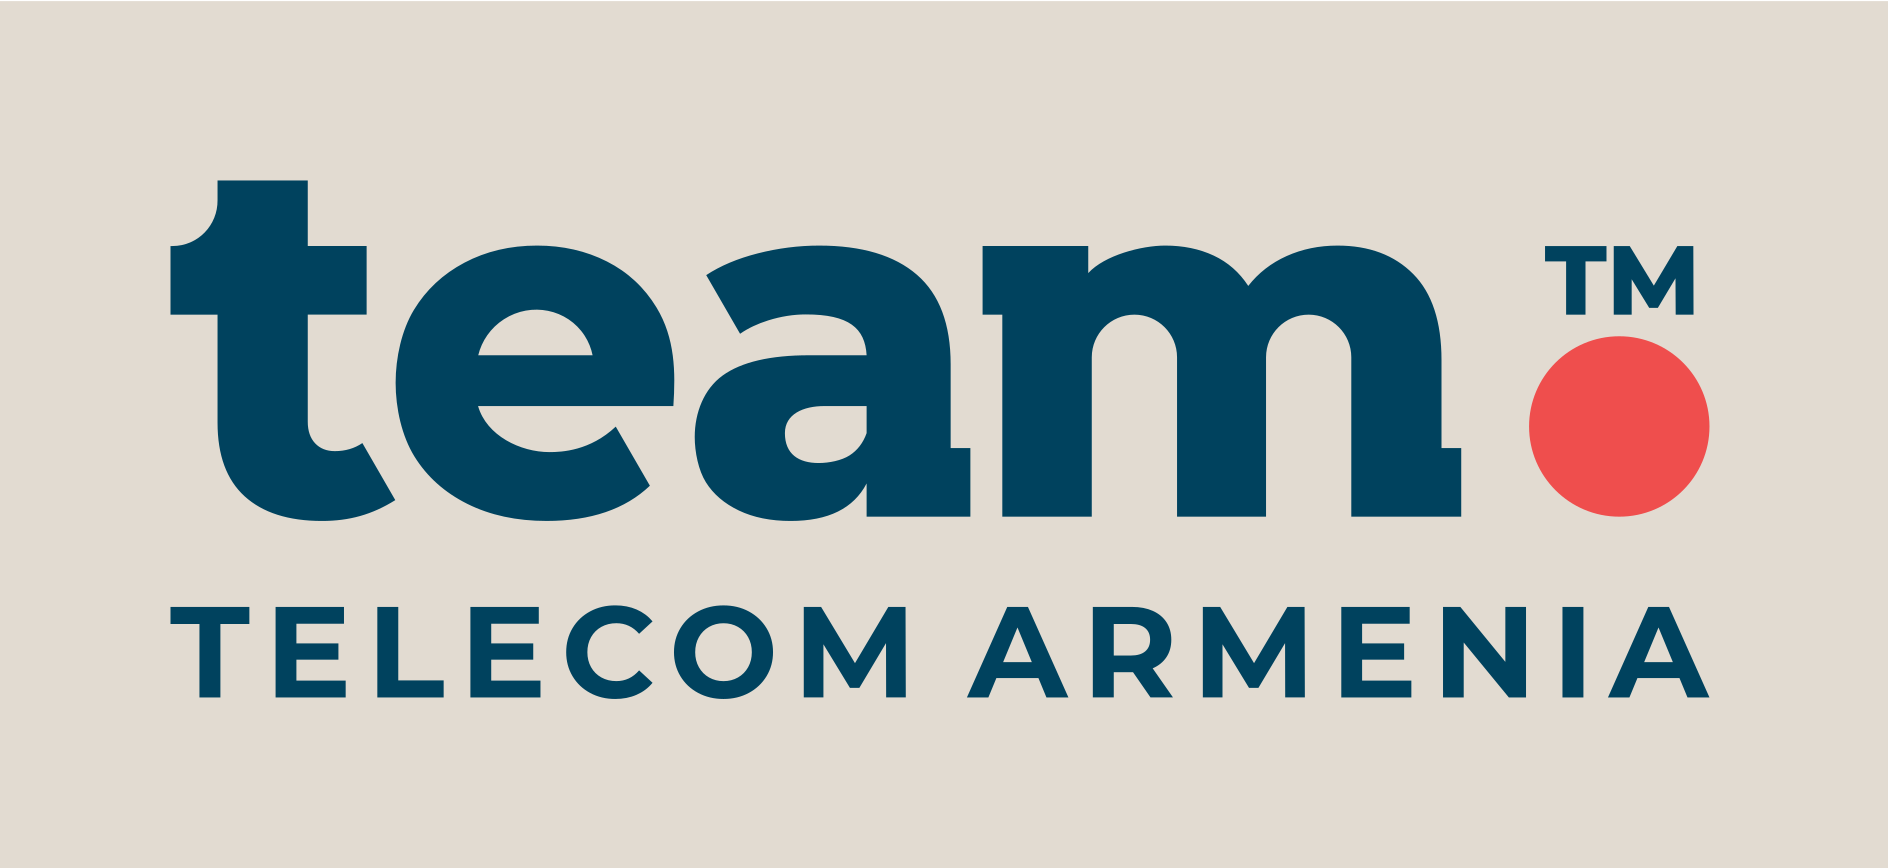 Ինտերնետ կապն ամբողջությամբ վերականգնվել է․  Team Telecom Armenia